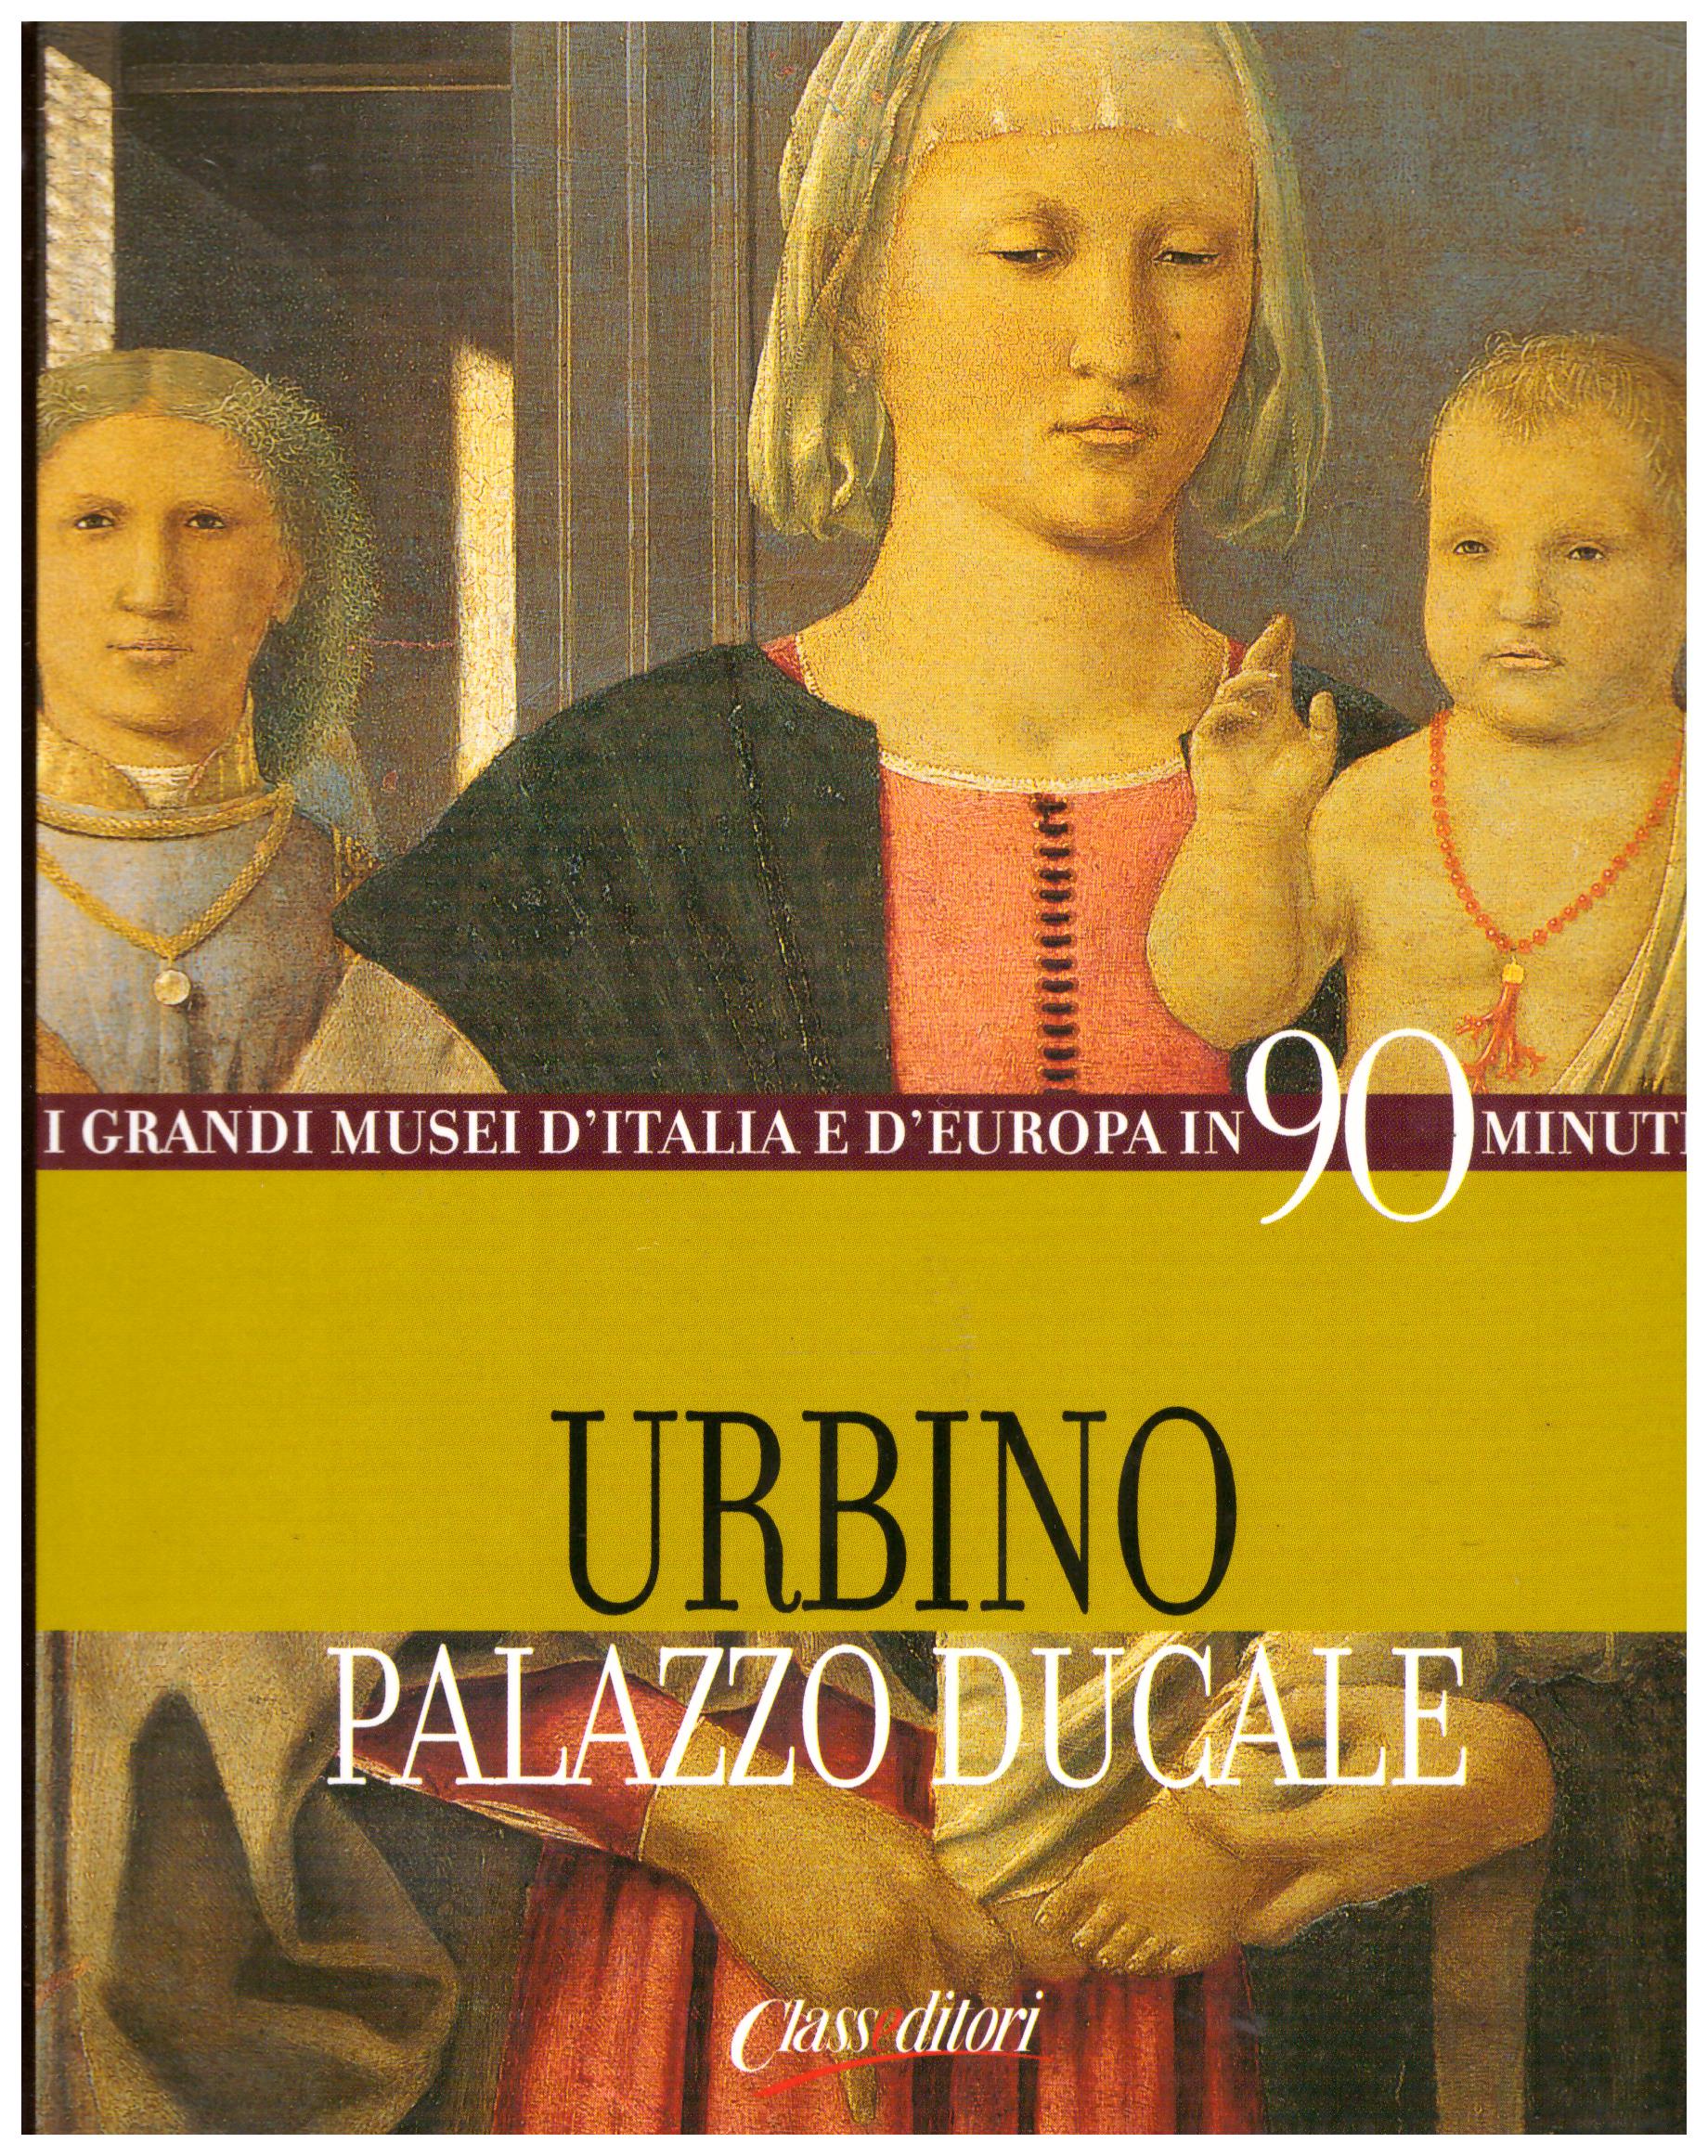 Titolo: I grandi musei in 90 minuti Urbino Autore: AA.VV.  Editore: classeditori